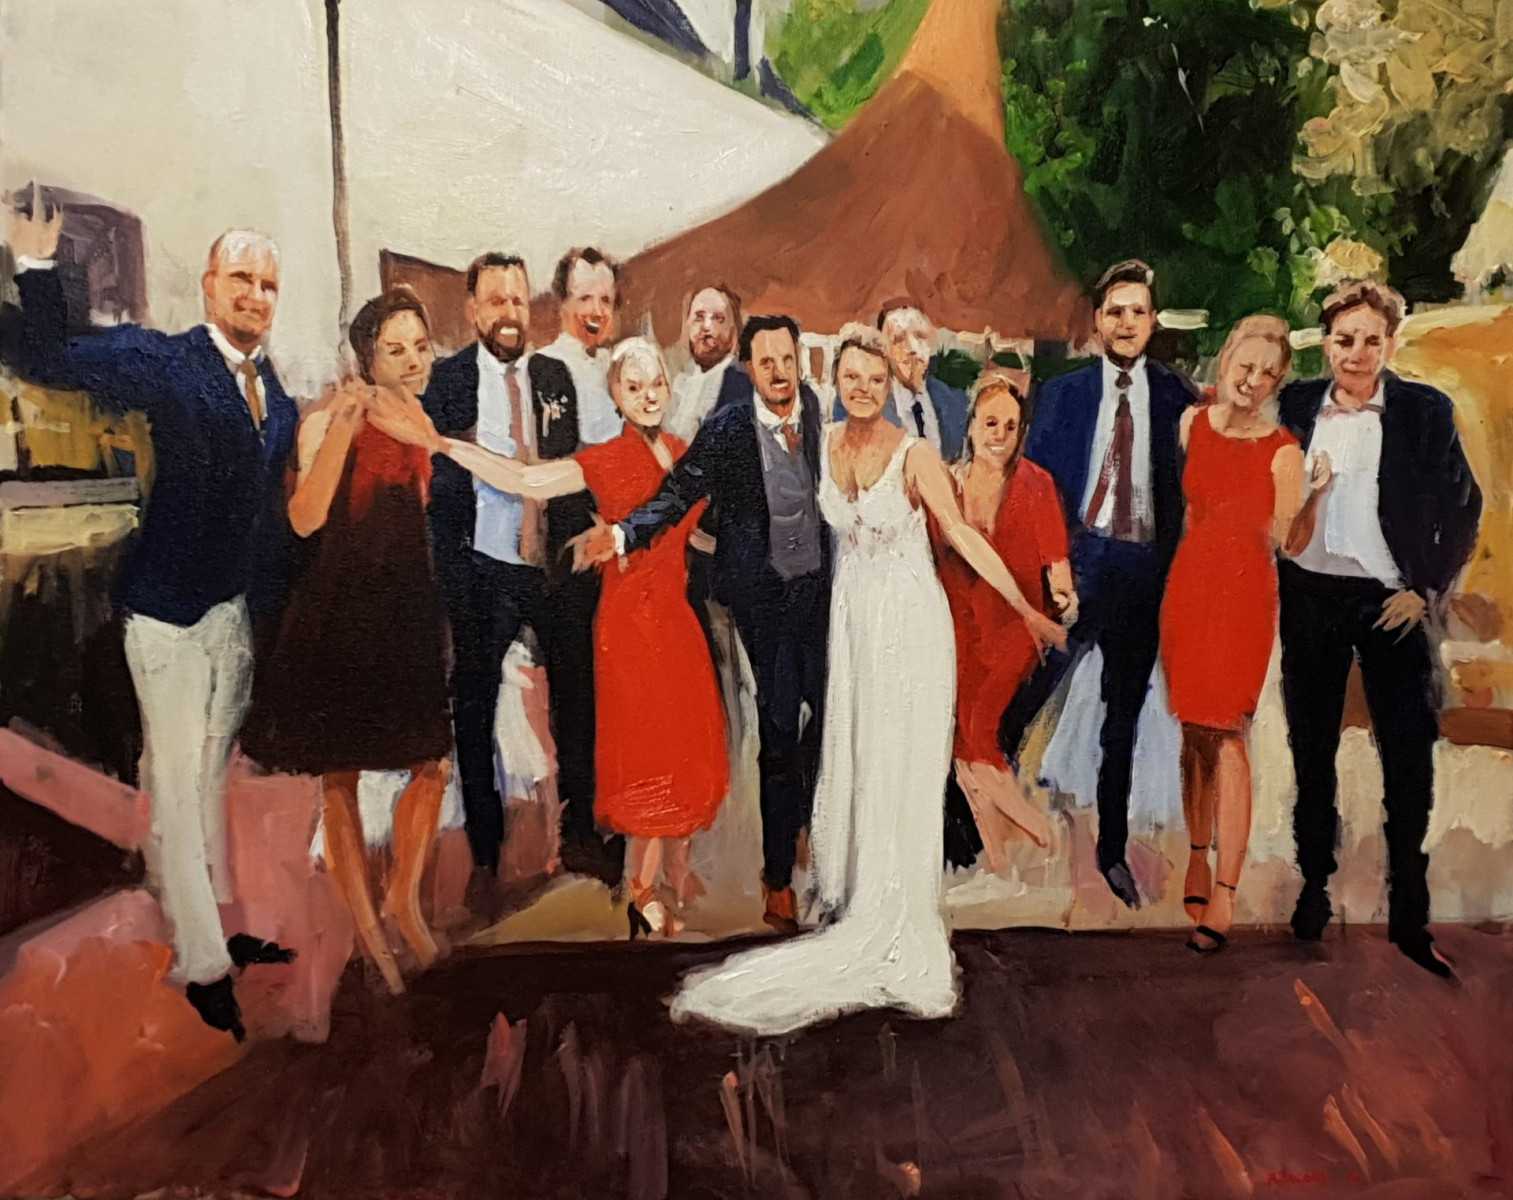 Rob Jacobs schildert doek van 80x100cm tijdens het trouwfeest in Nijkerk, Gelderland.